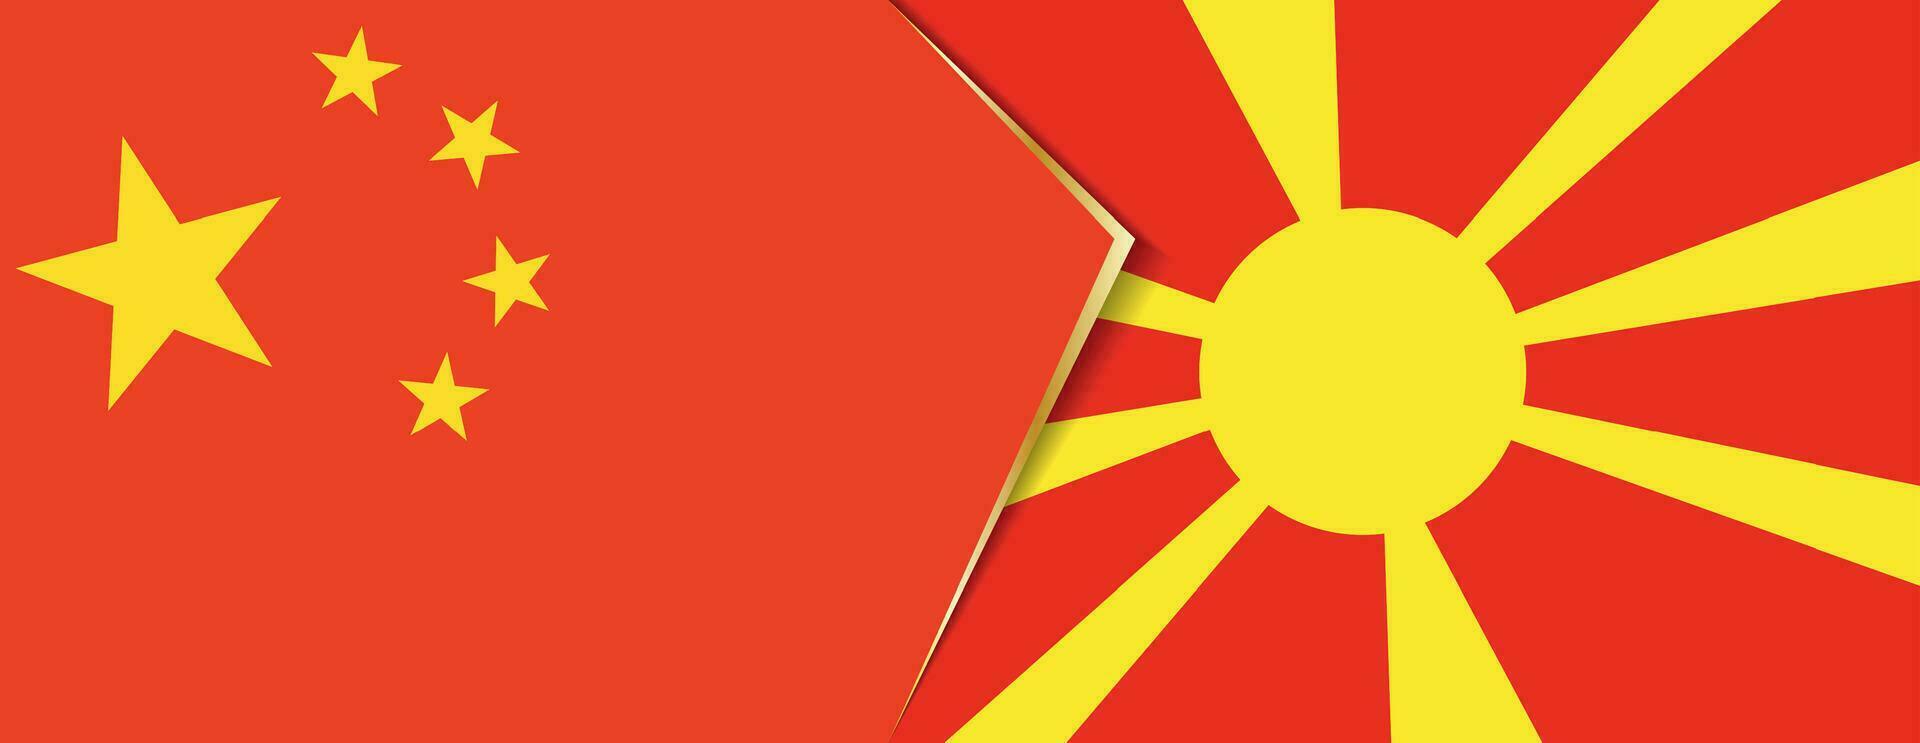 China und Mazedonien Flaggen, zwei Vektor Flaggen.